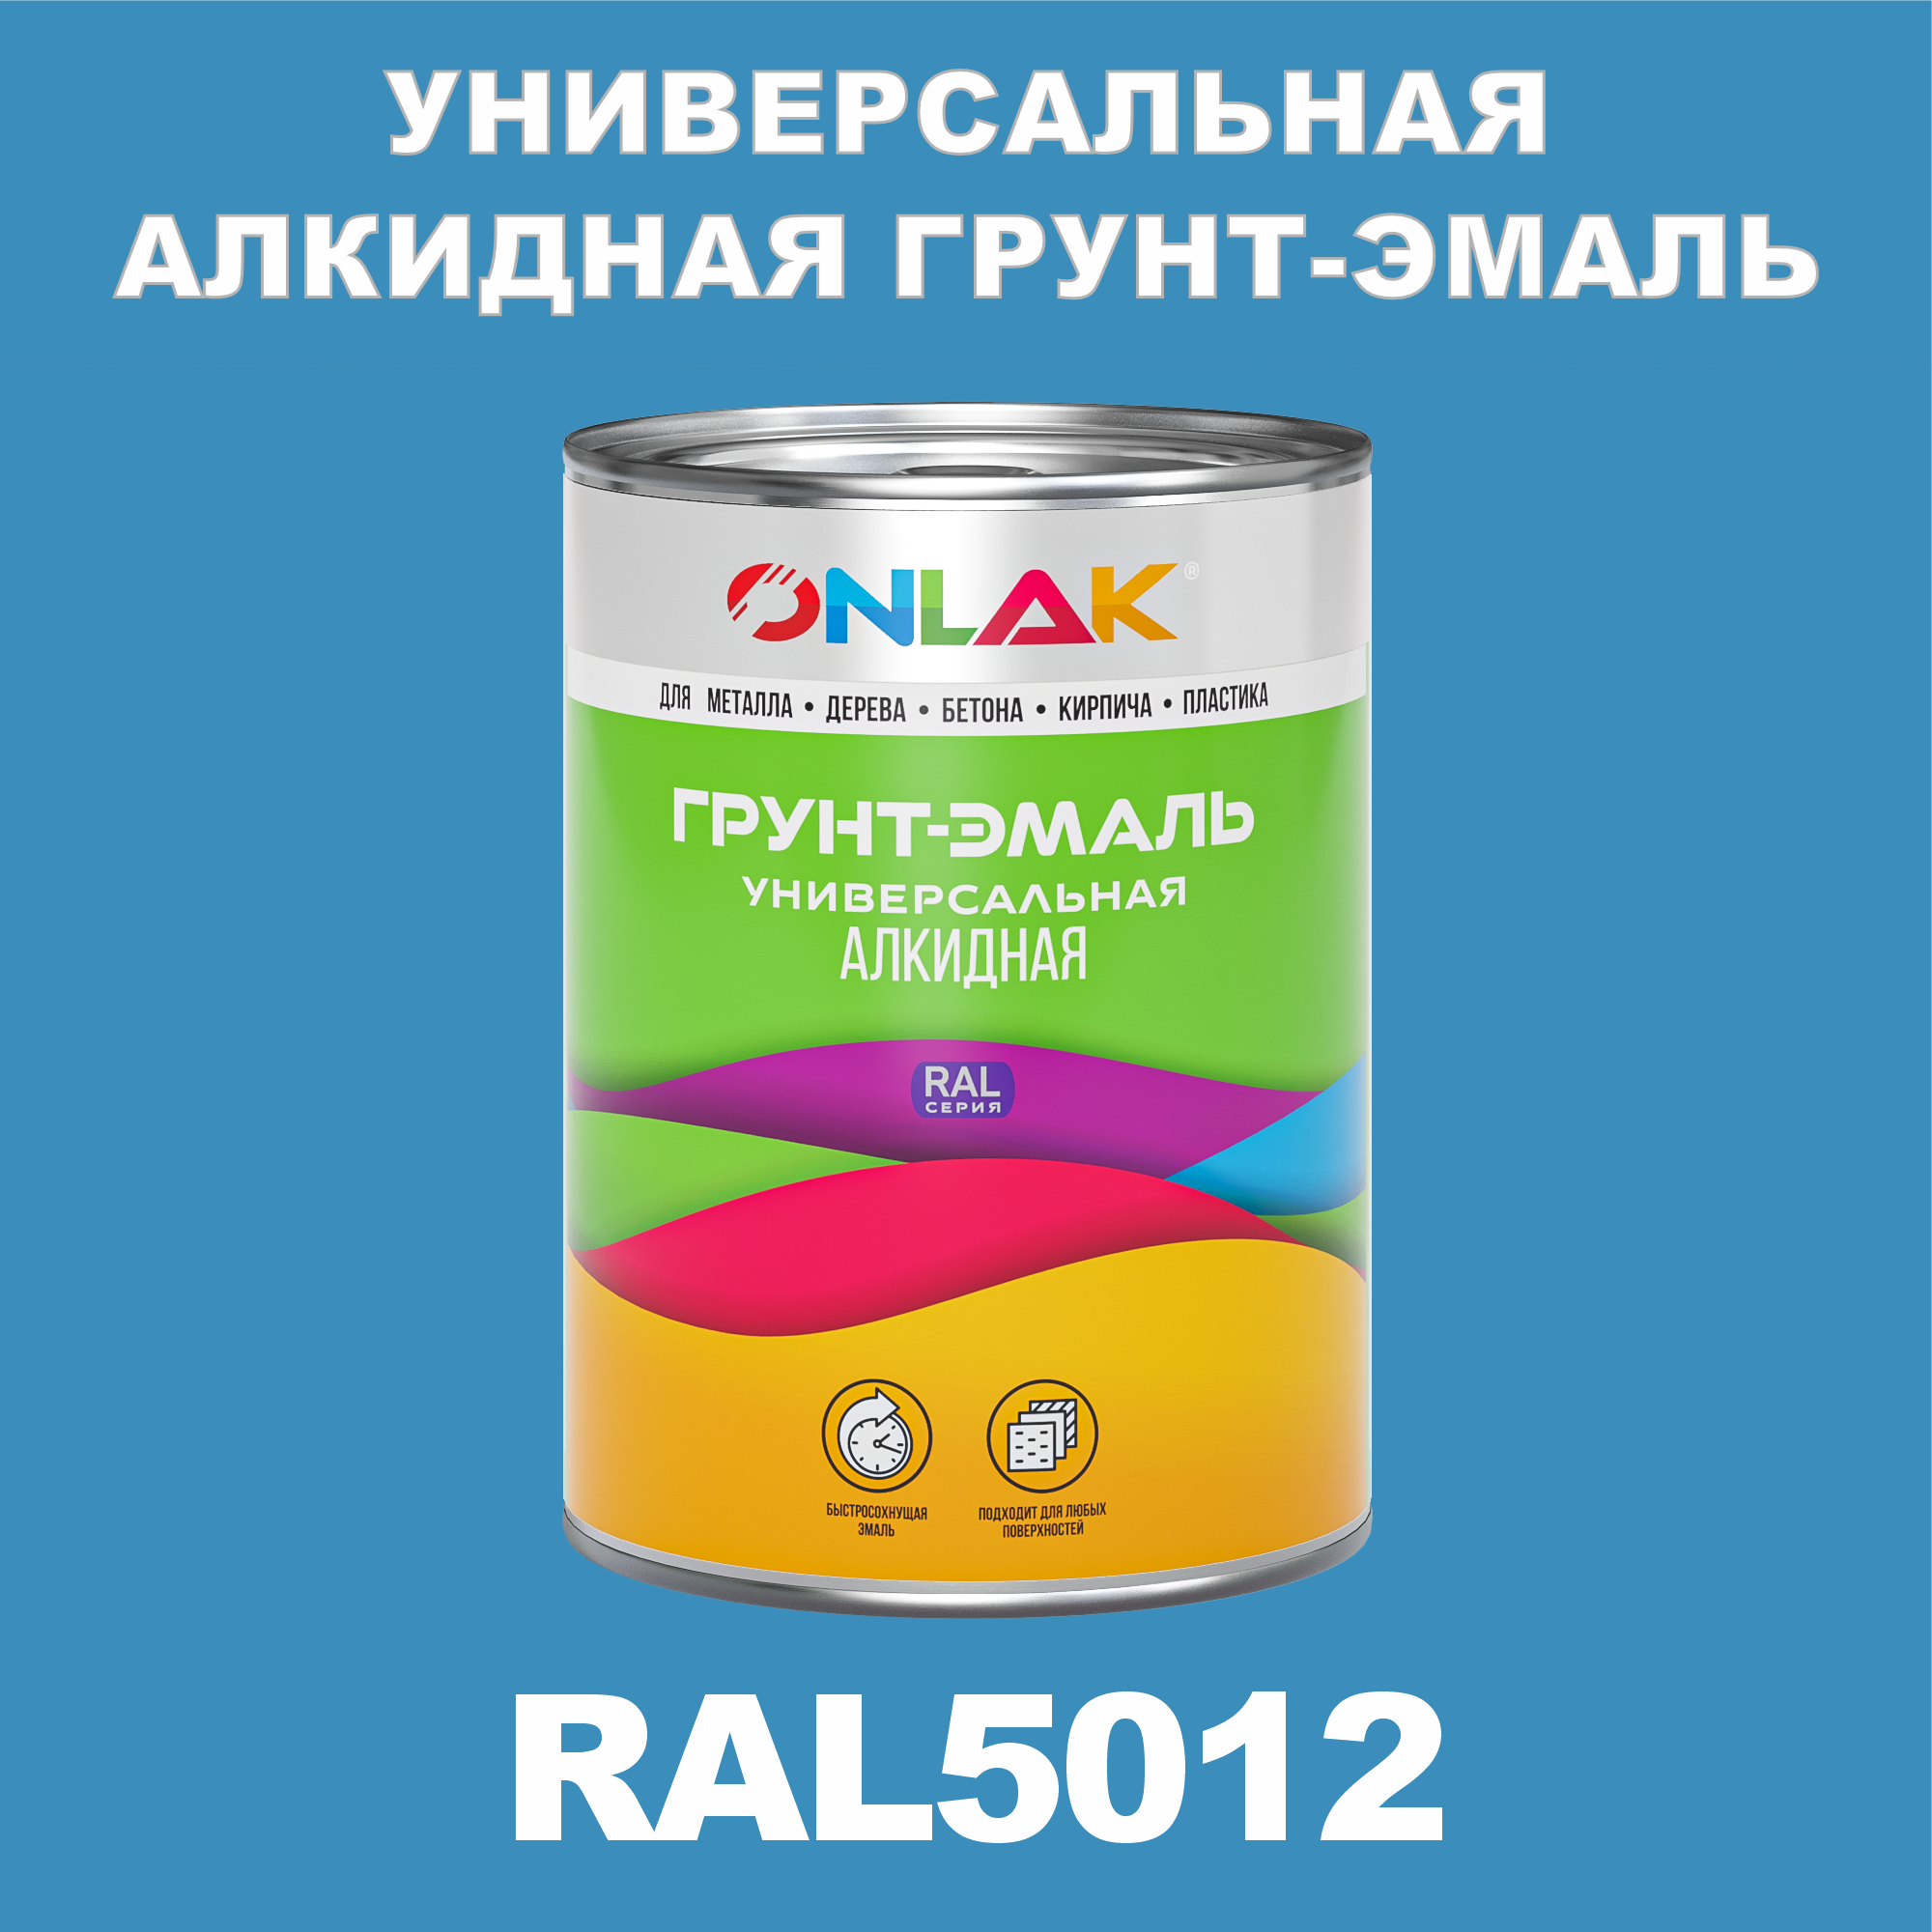 Грунт-эмаль ONLAK 1К RAL5012 антикоррозионная алкидная по металлу по ржавчине 1 кг грунт эмаль yollo по ржавчине алкидная серая 0 9 кг